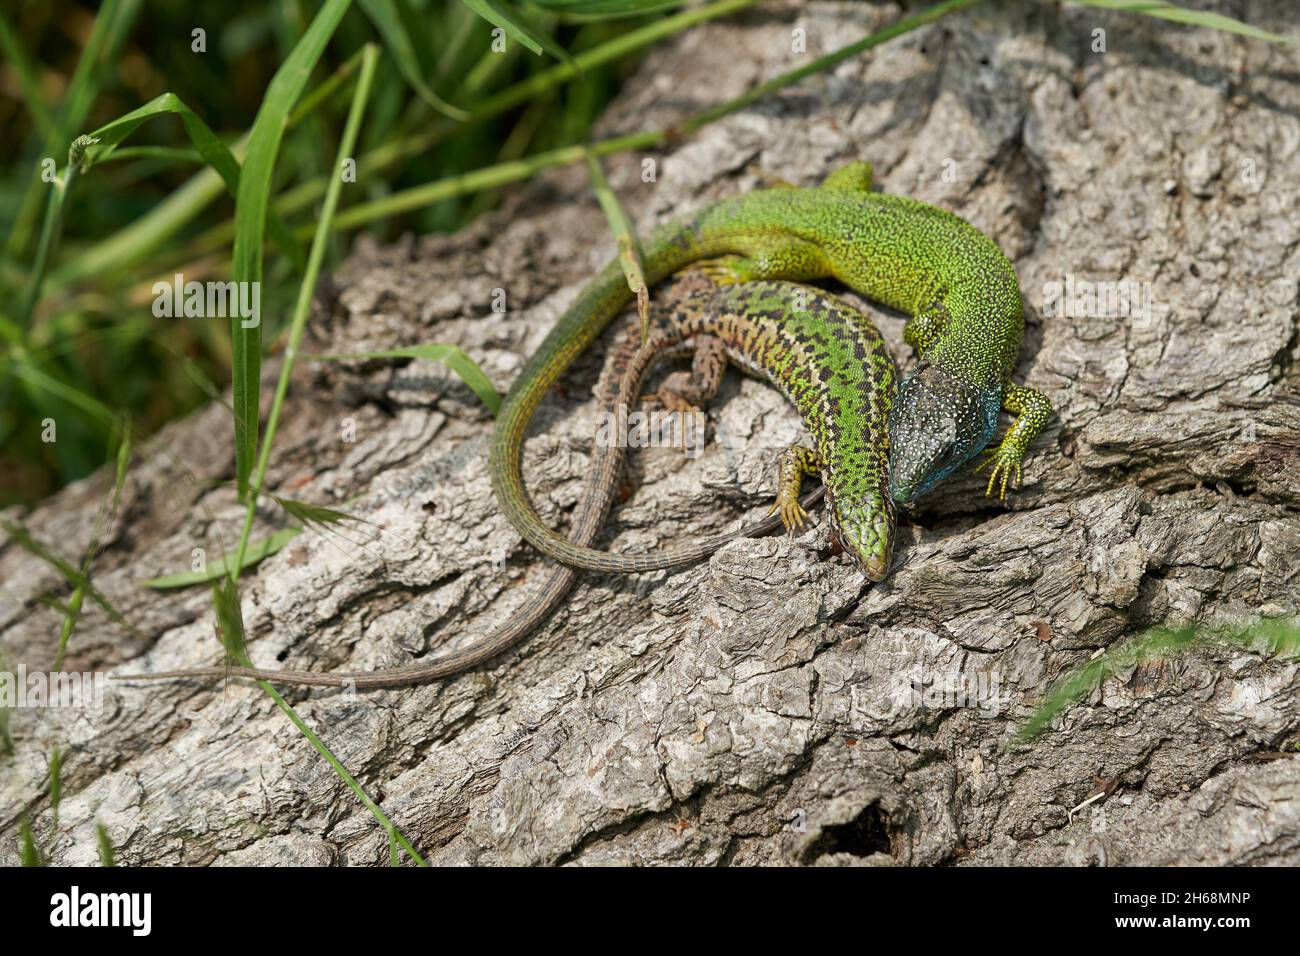 Wildlife foto del lagarto Verde Europeo Lacerta viridis Foto de stock